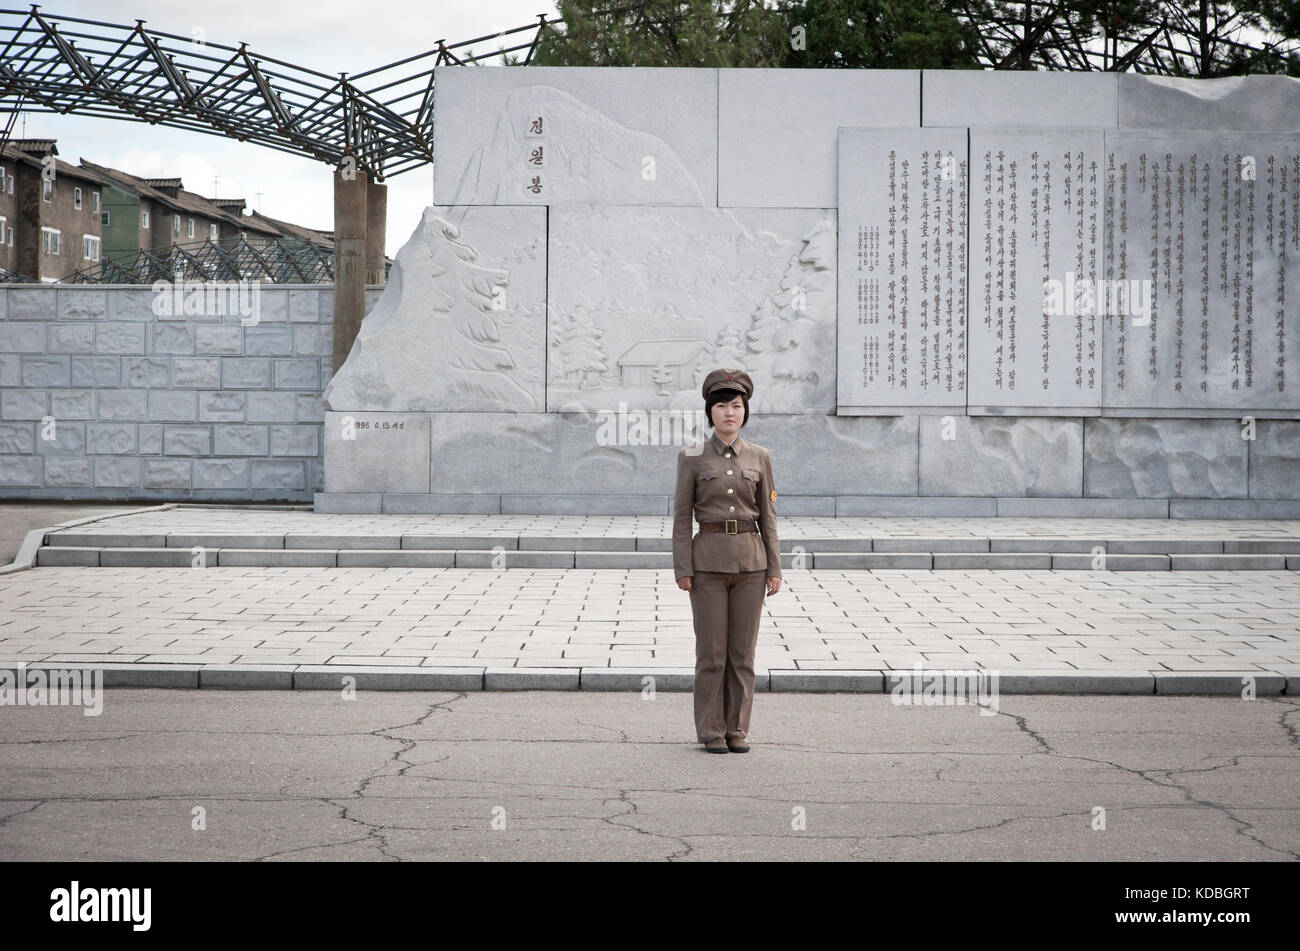 Le jour de la fête nationale, tous les Nord coréens ont l'obligation de saluer les immenses statues des leaders,  Pyongyang le 8 octobre 2012. The day Stock Photo